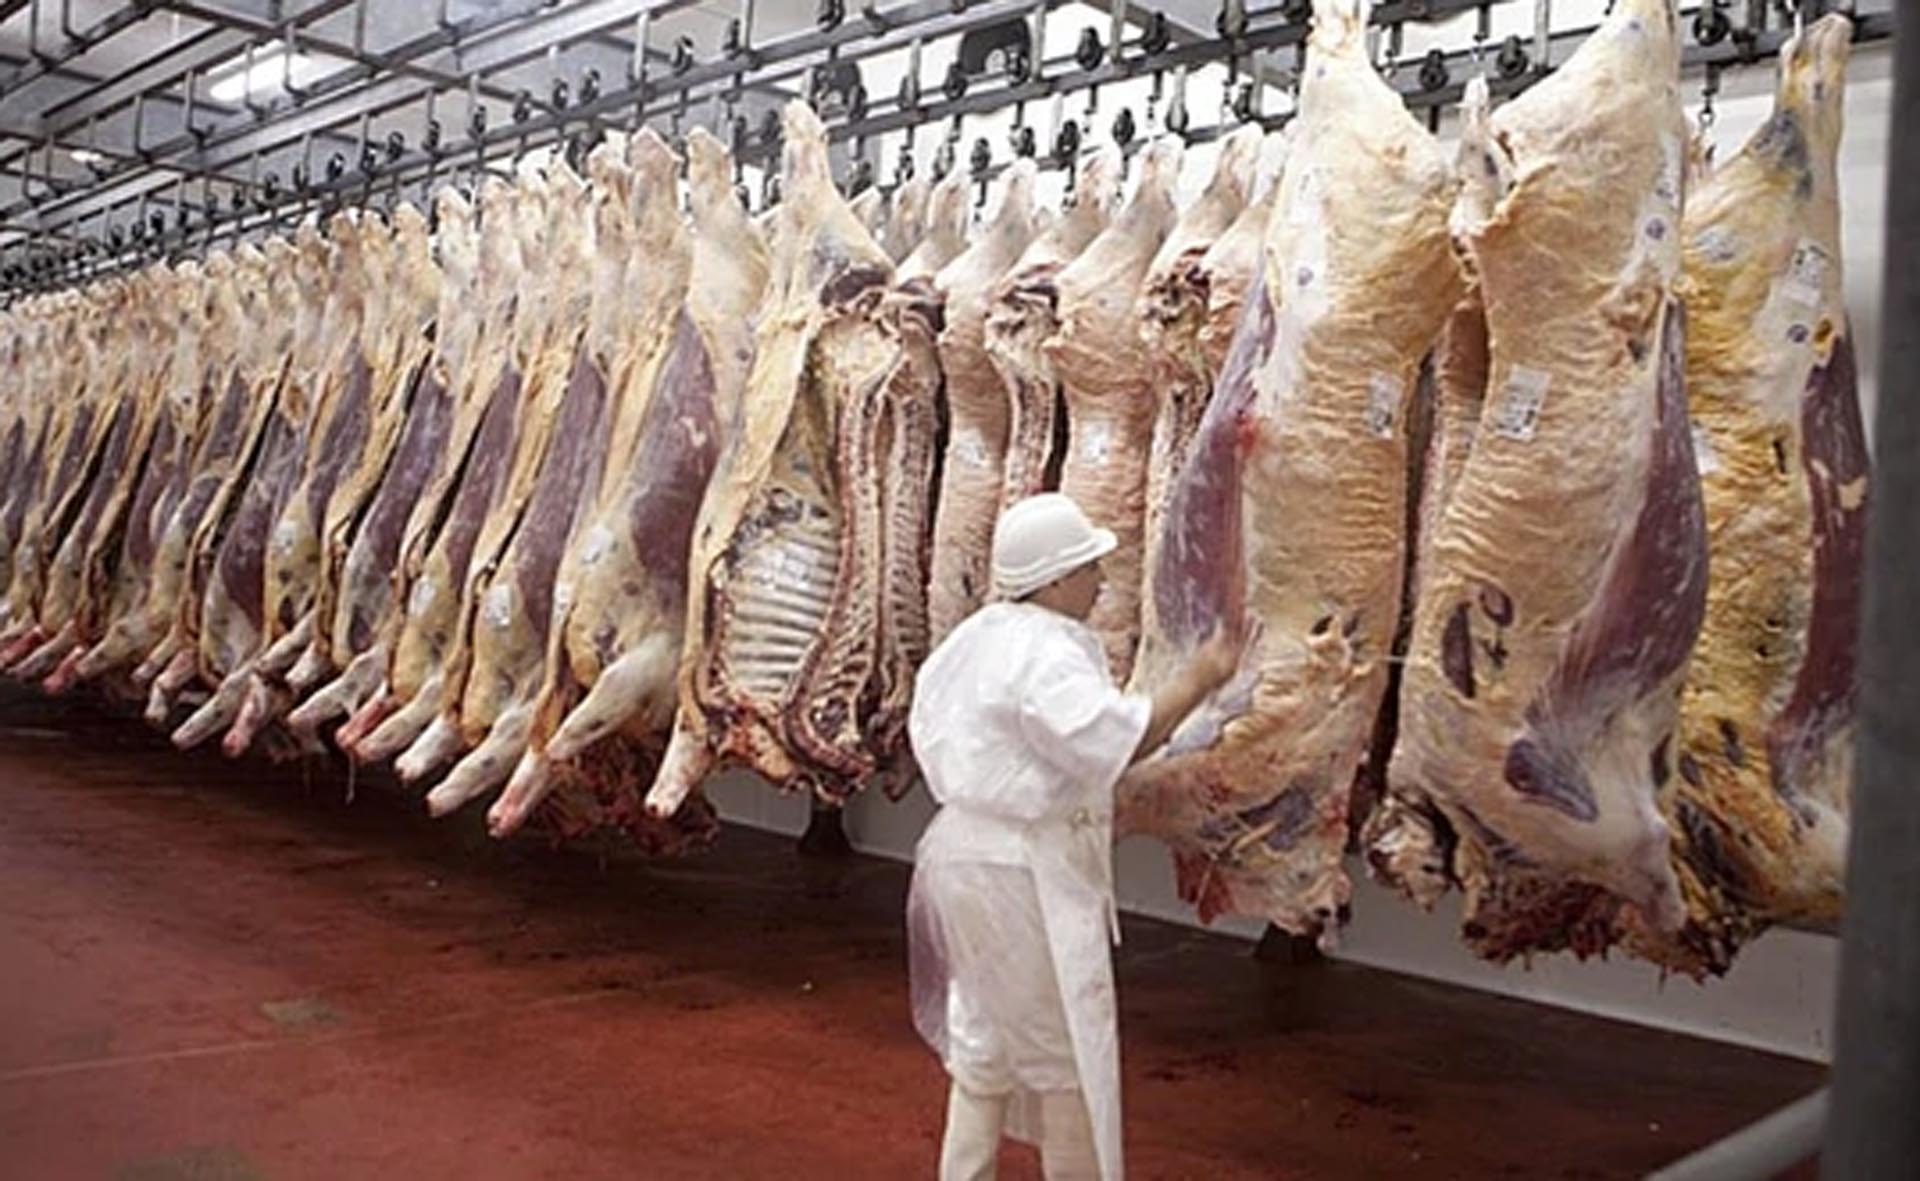 Reapertura de un mercado: el Gobierno anunció que Argelia volverá a comprar carne con hueso a la Argentina 